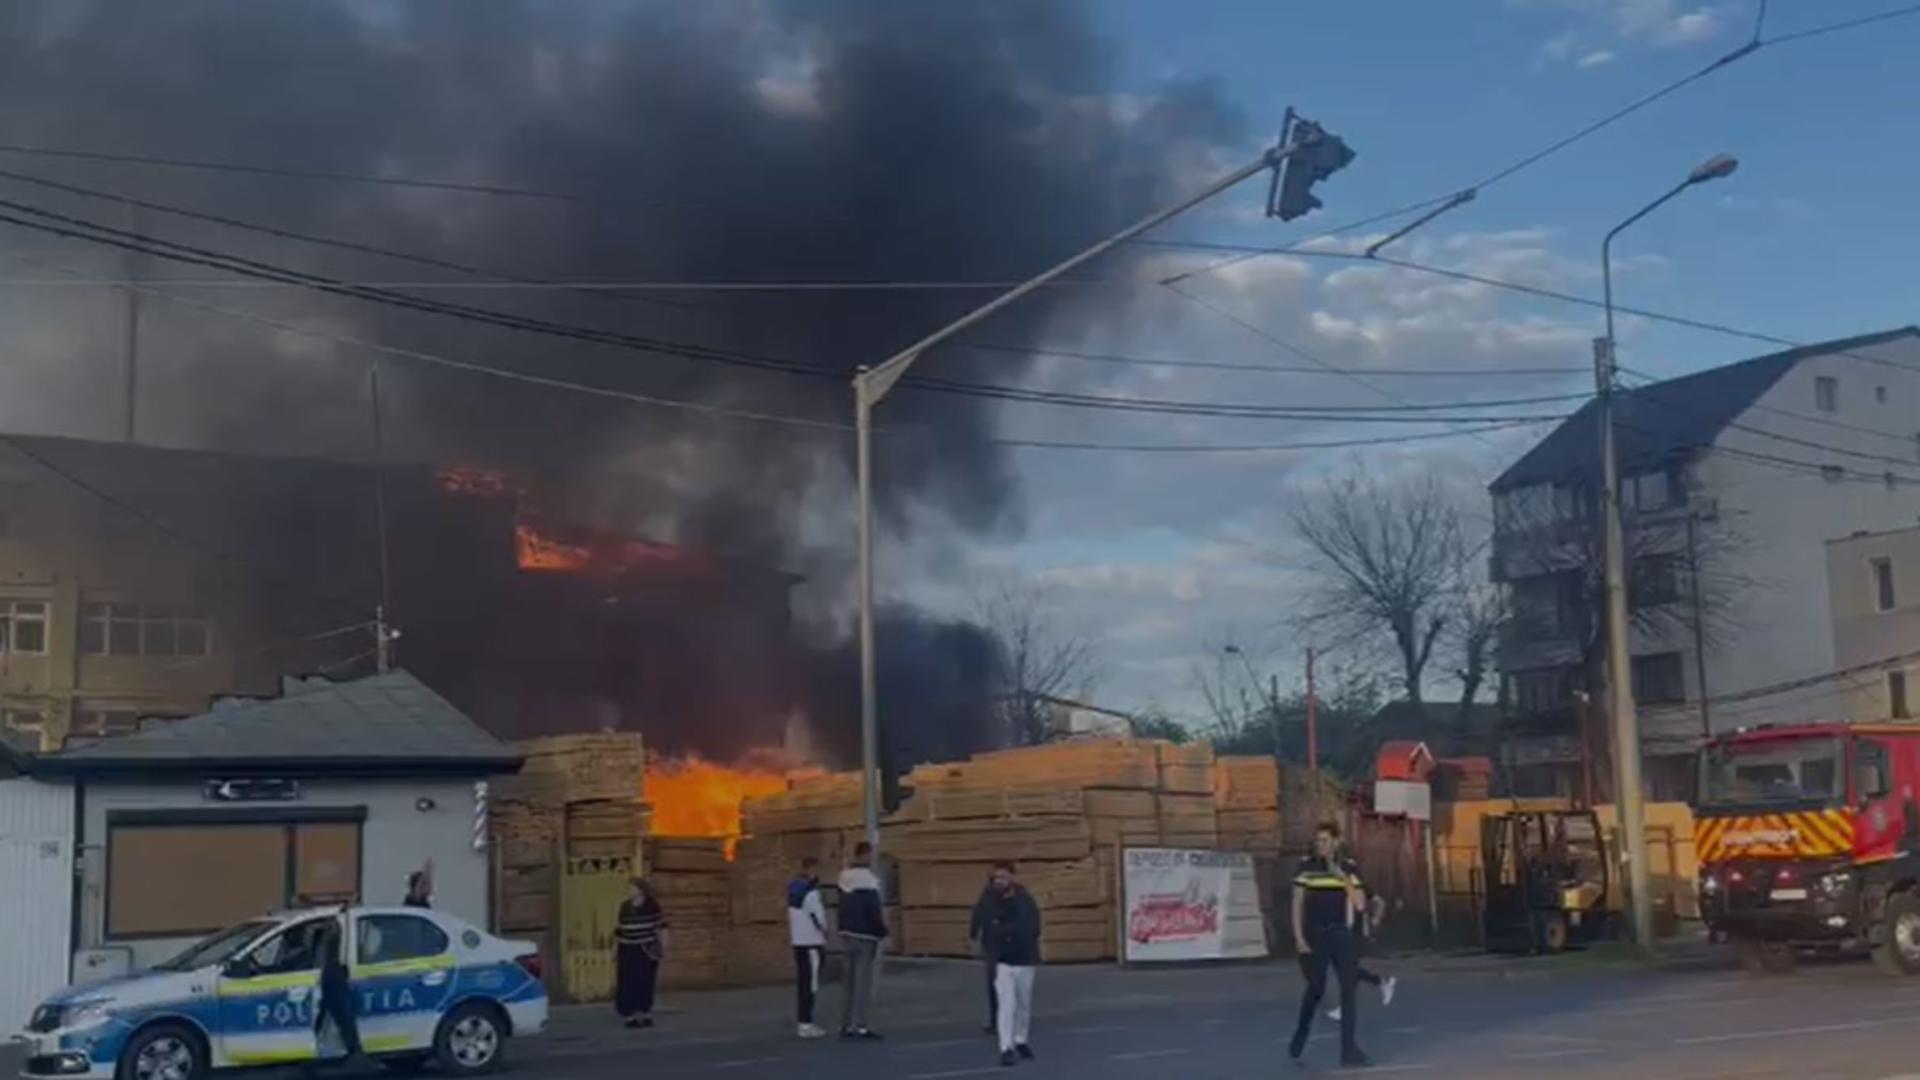 Incendiu devastator la un depozit din Sectorul 1. Focul s-a extins la aproape 1.000 de metri pătrați. Din fericire, nu sunt victime